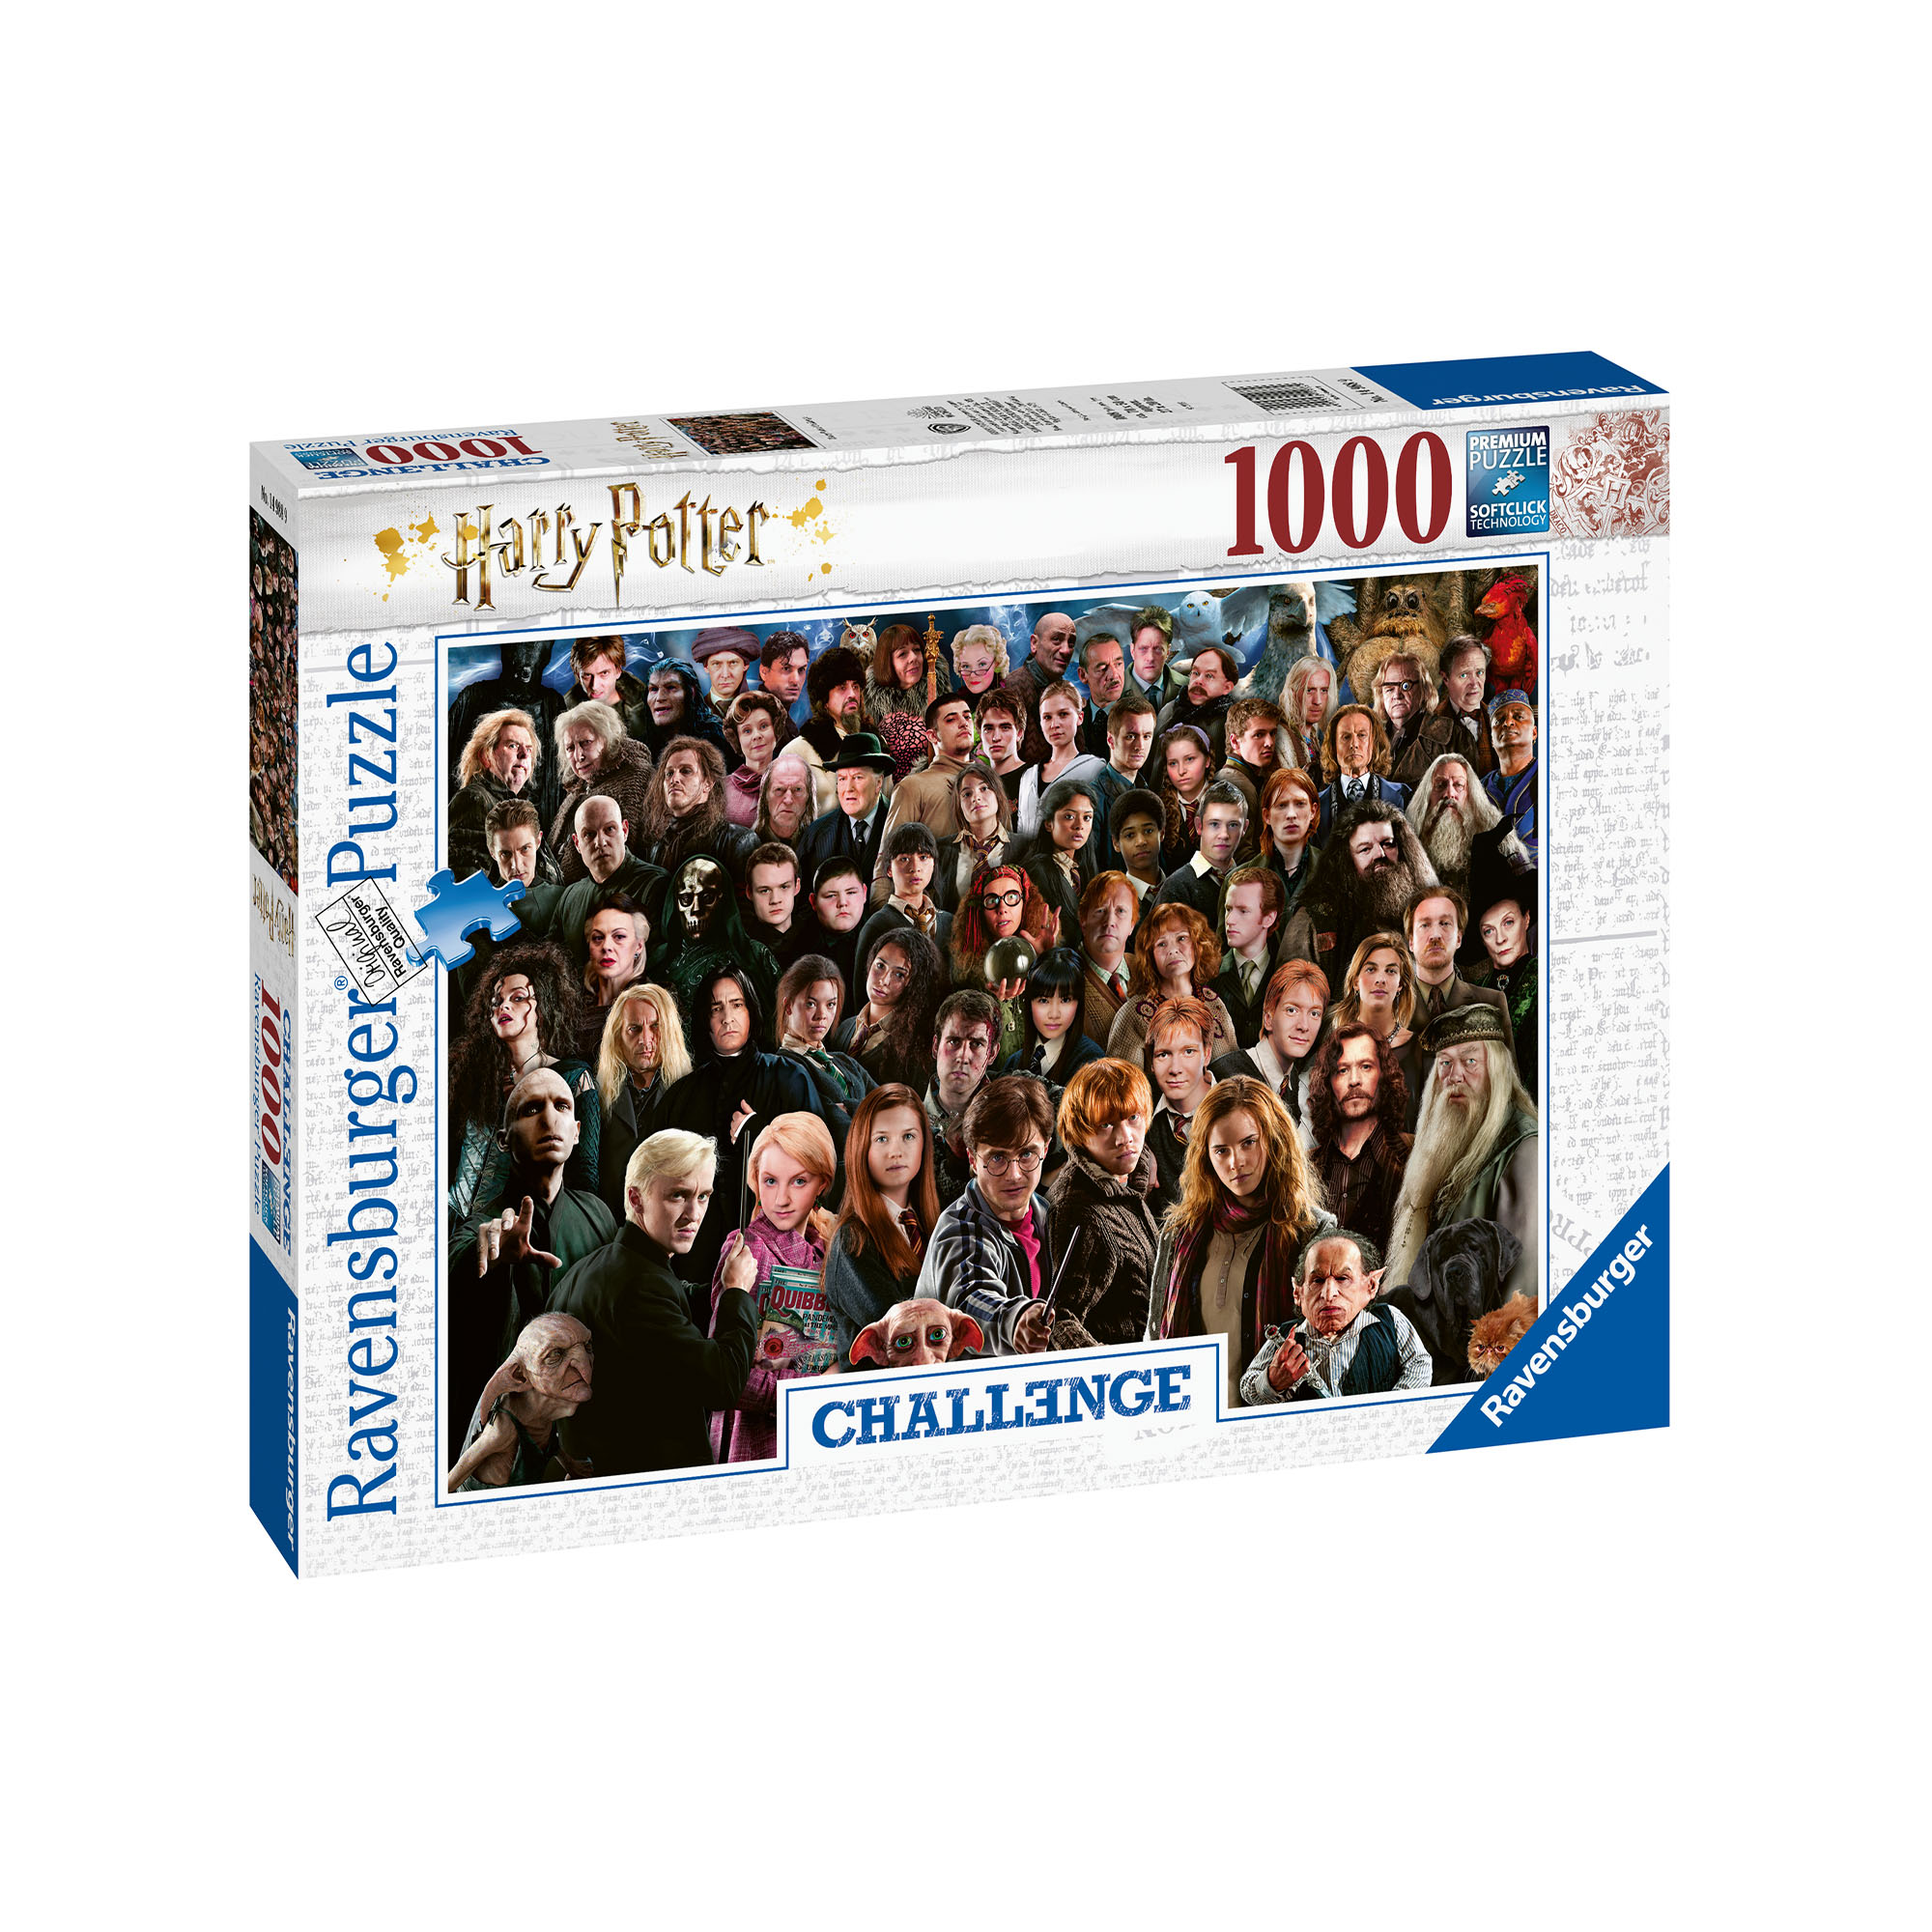 Ravensburger Puzzle 1000 pezzi 14988 - Challenge Puzzle Harry Potter, , large